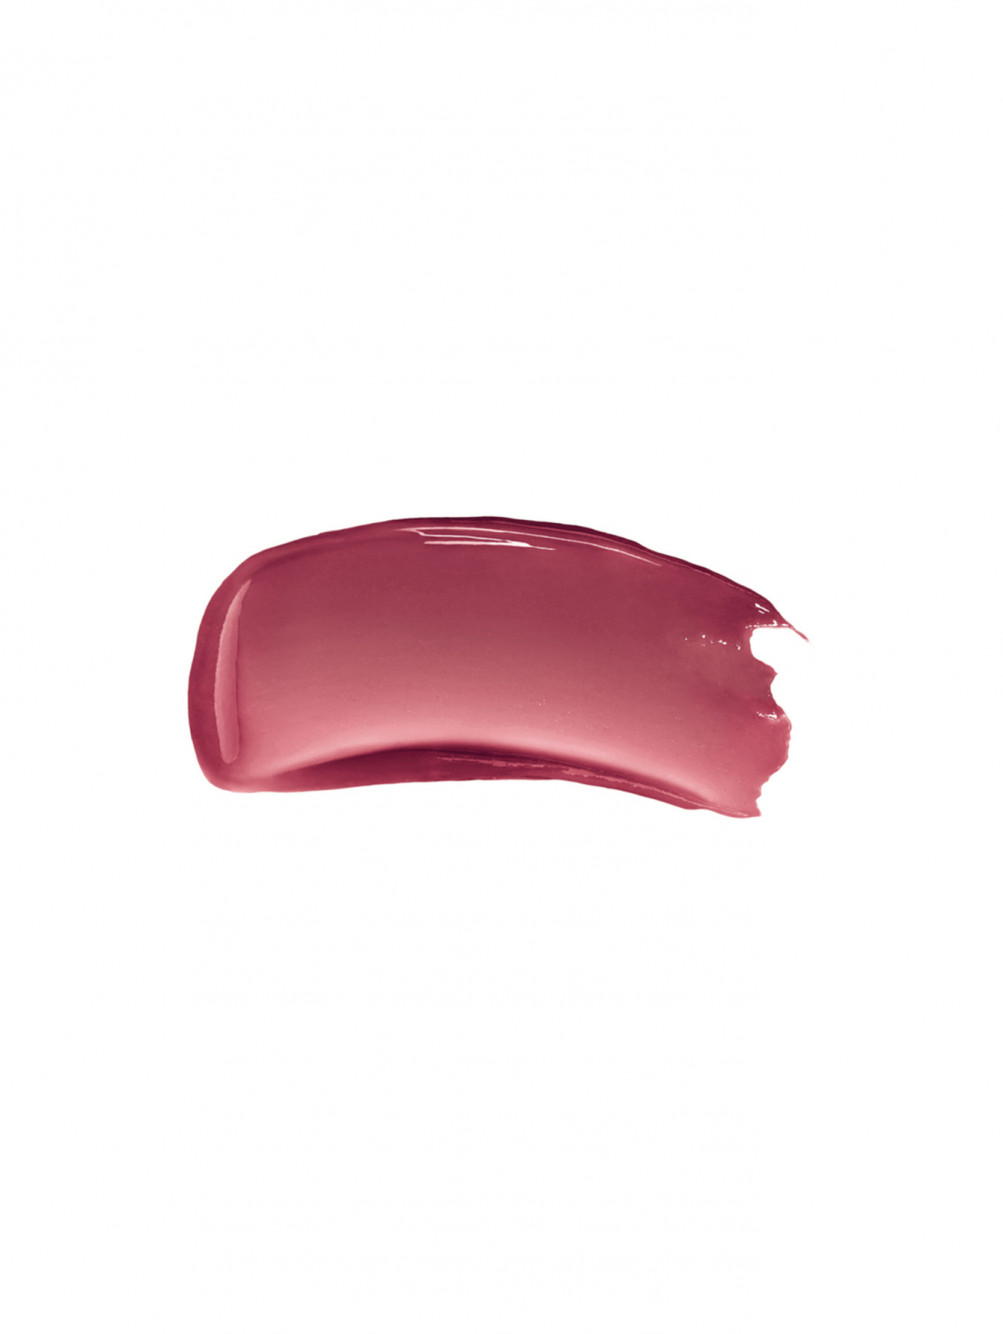 Жидкий бальзам для губ Rose Perfecto Liquid Balm, 011 черный розовый, 6 мл - Обтравка1